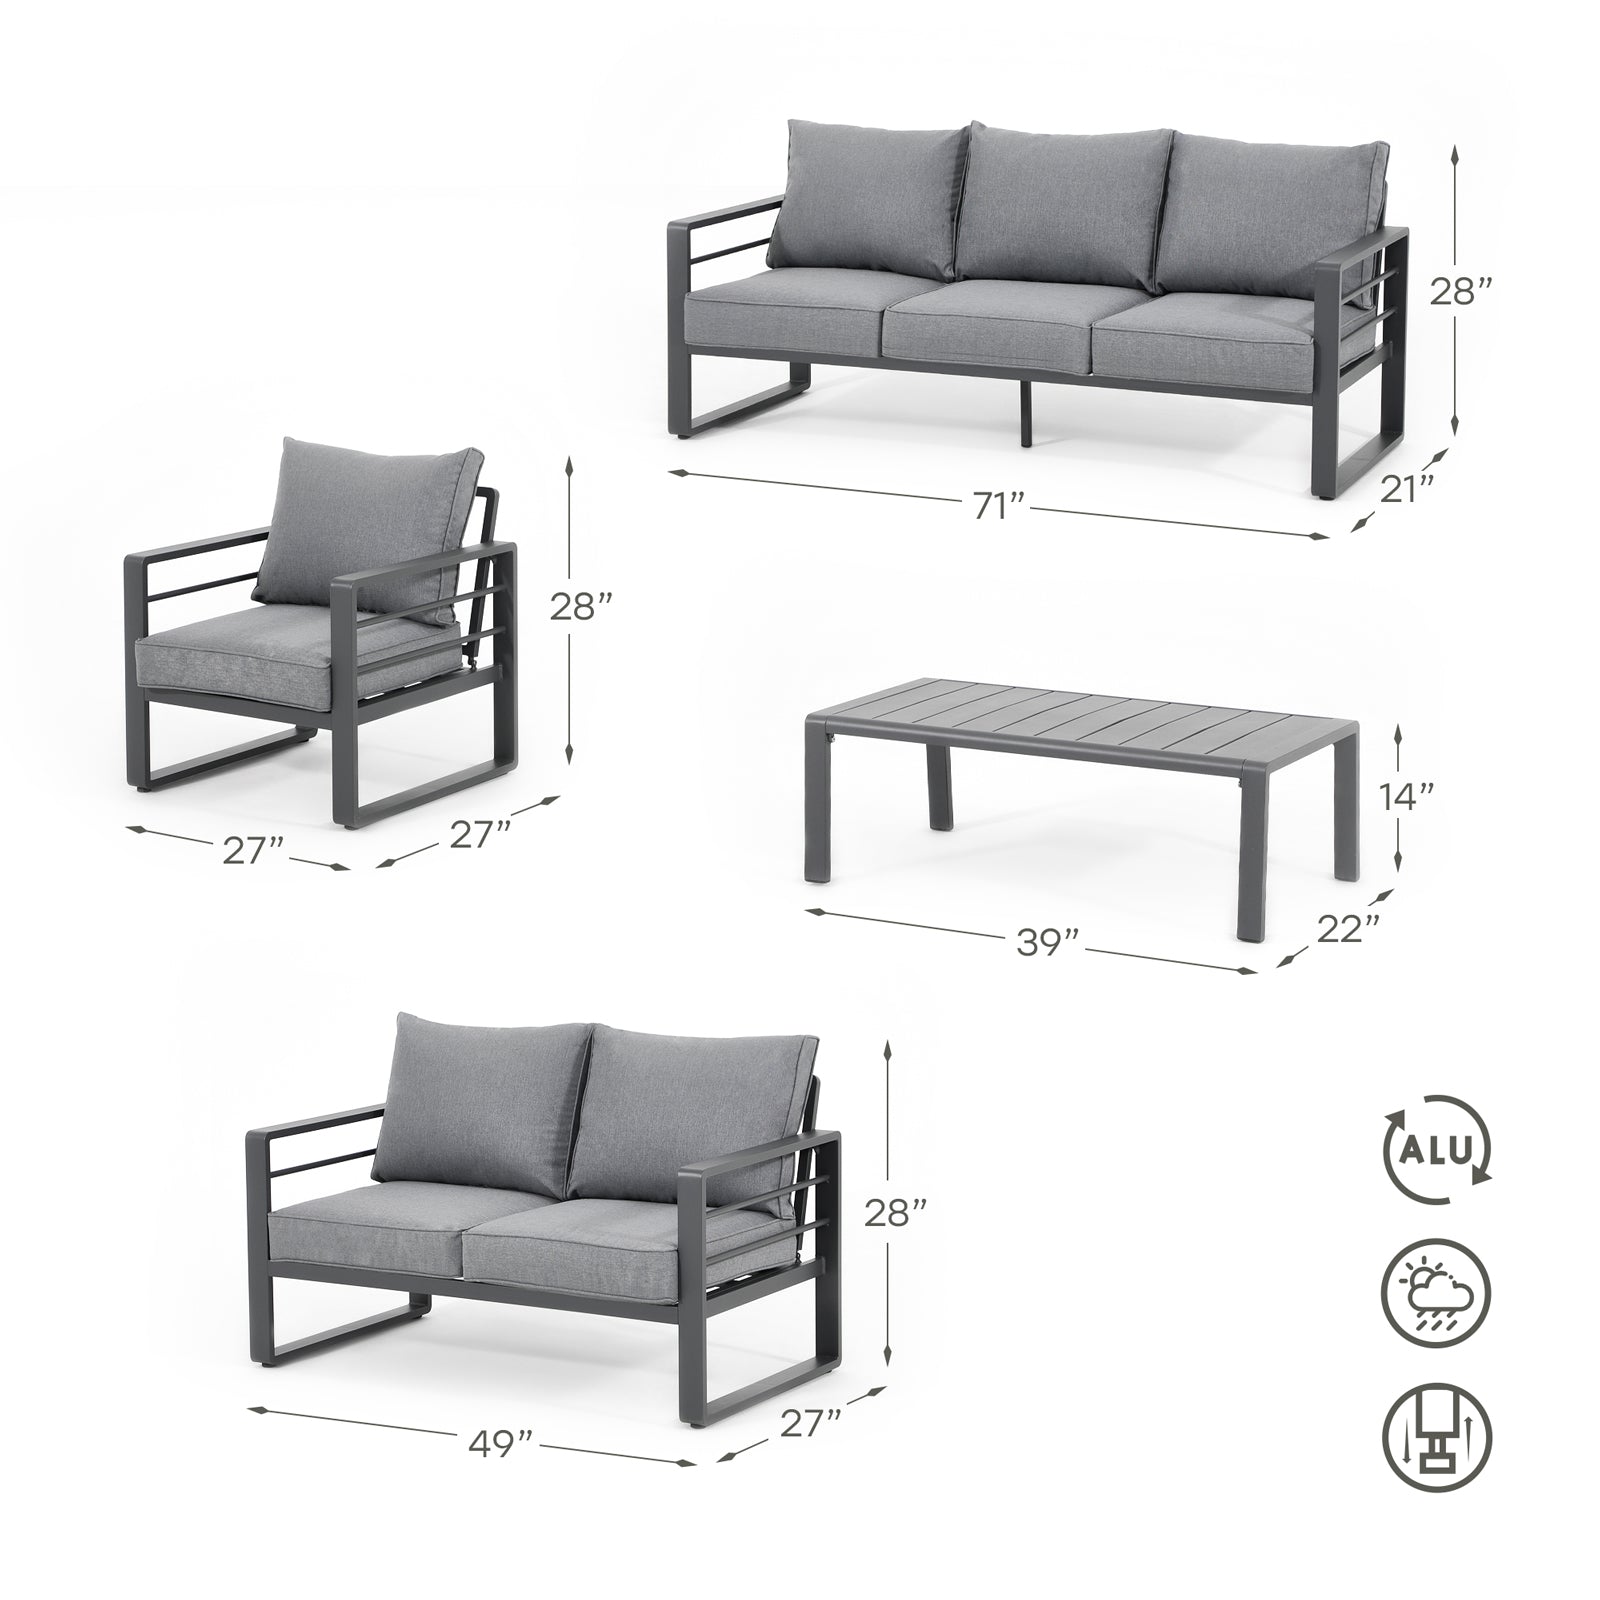 Salina Modern Grey Aluminum Outdoor Sofa Set with Grey Cushions, a 3-seater sofa, 2-seater sofa, 2 armchairs, 1 rectangle coffee table, Dimension Information - Jardina Furniture